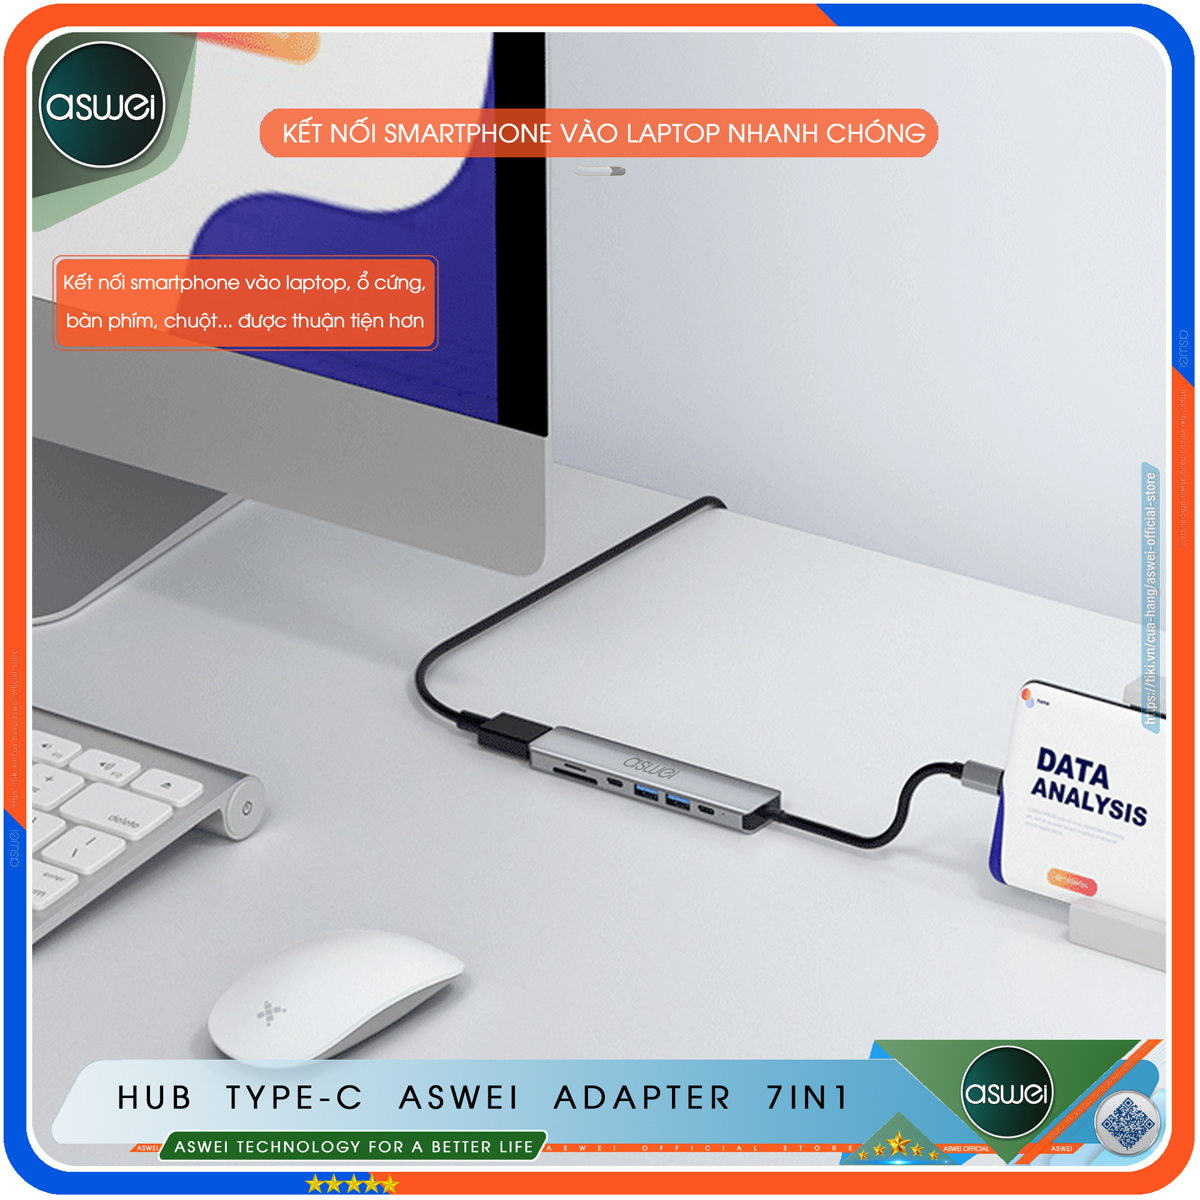 Hub Type C ASWEI 7 in 1 To HDMI, USB 3.0, SD, TF, USB C, PD - Hub Chuyển Đổi USB Type C 7 Cổng - Cổng Chia USB, Ổ Chia USB Tốc Độ Cao Dành Cho Macbook, Laptop, PC, Máy Tính Bảng, Điện Thoại - Hàng Chính Hãng